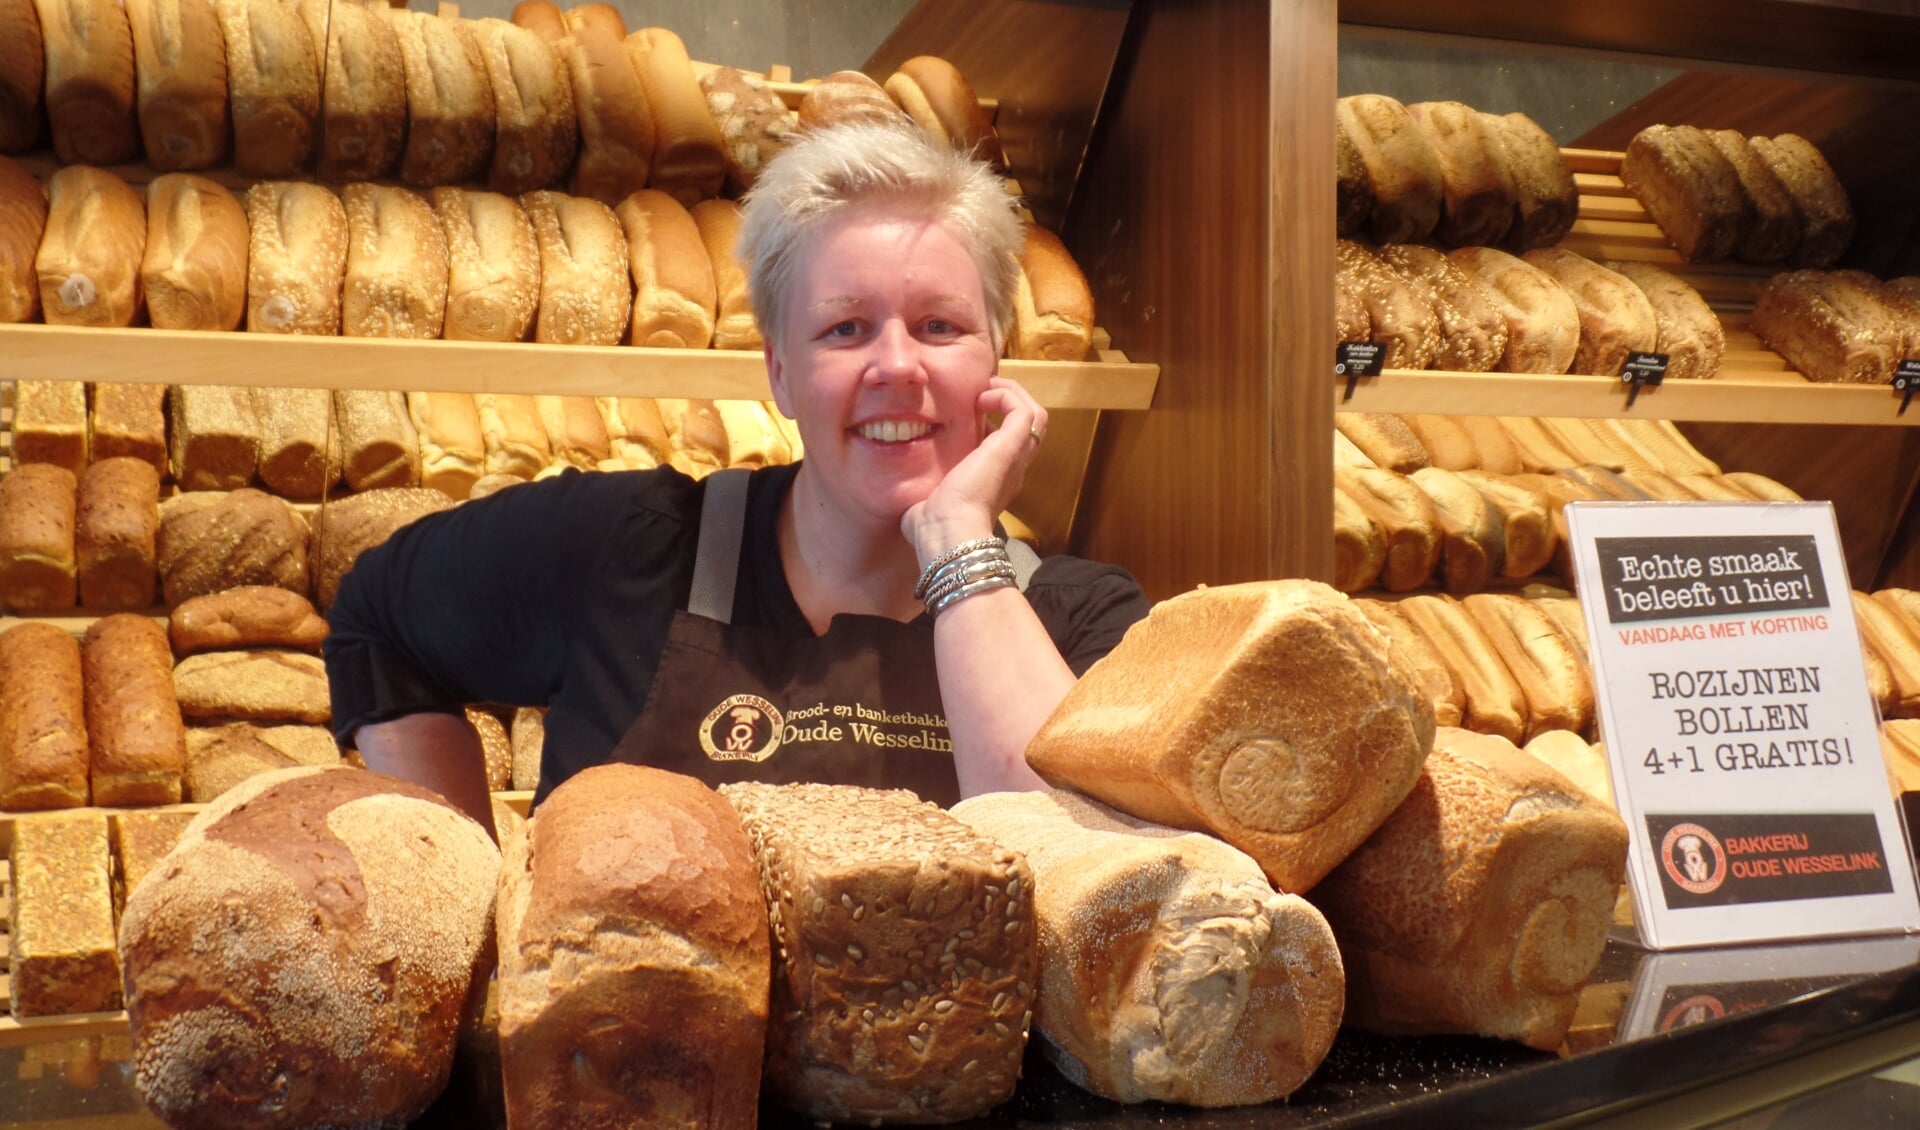 Voor de altijd goedlachse Sandra ter Bogt is de sfeer in de bakkerijwinkel van essentieel belang. Foto: Jan Hendriksen